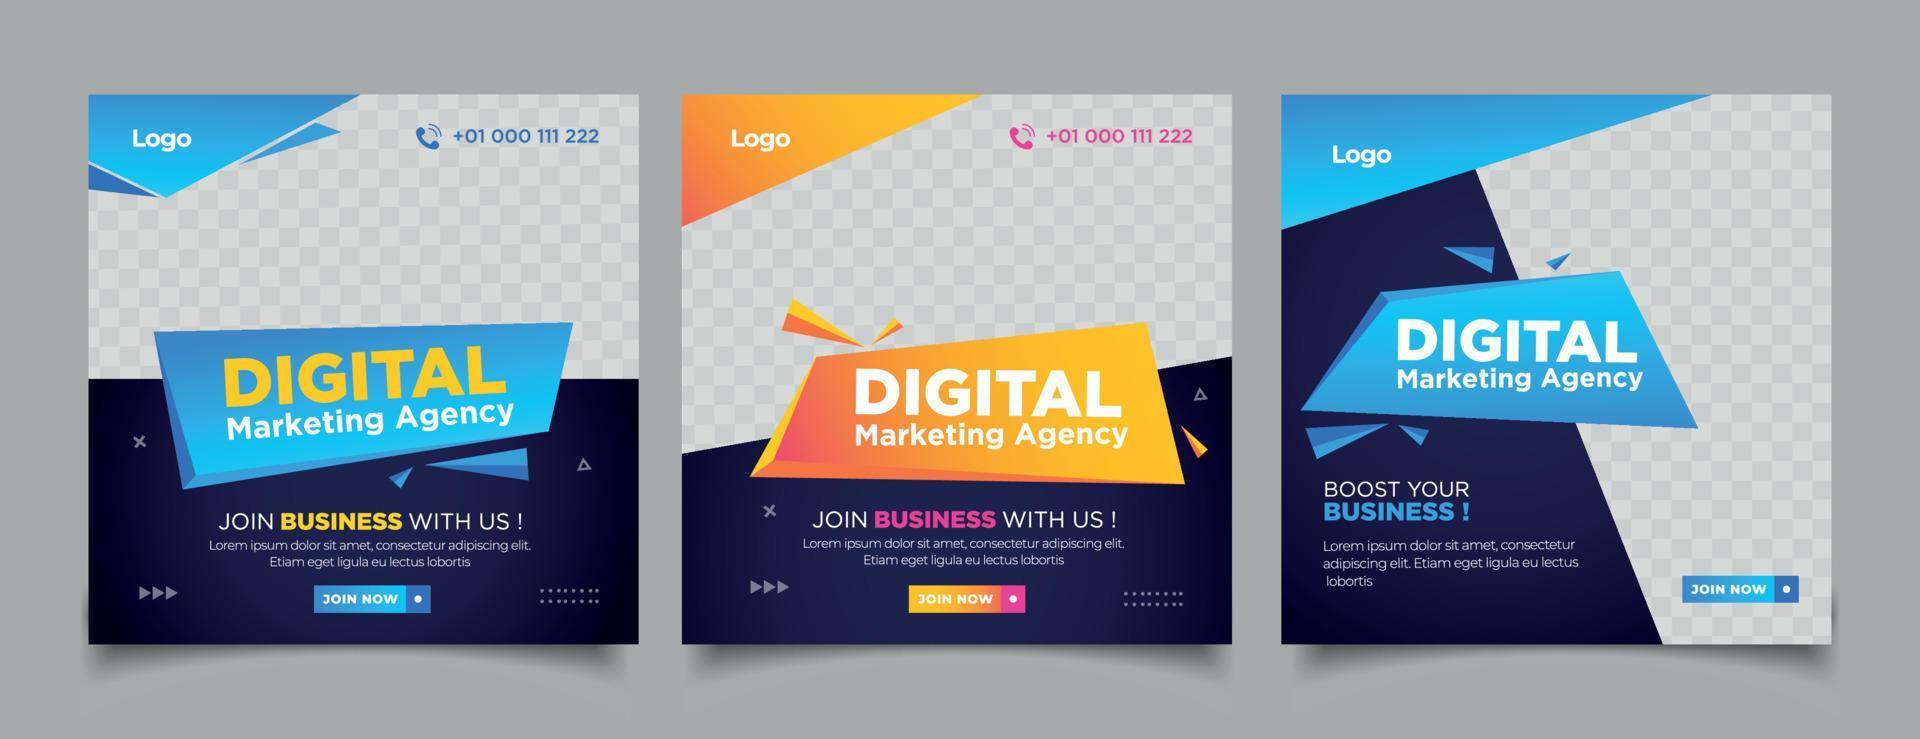 agencia de marketing digital con publicación de redes sociales con textura de papel vector